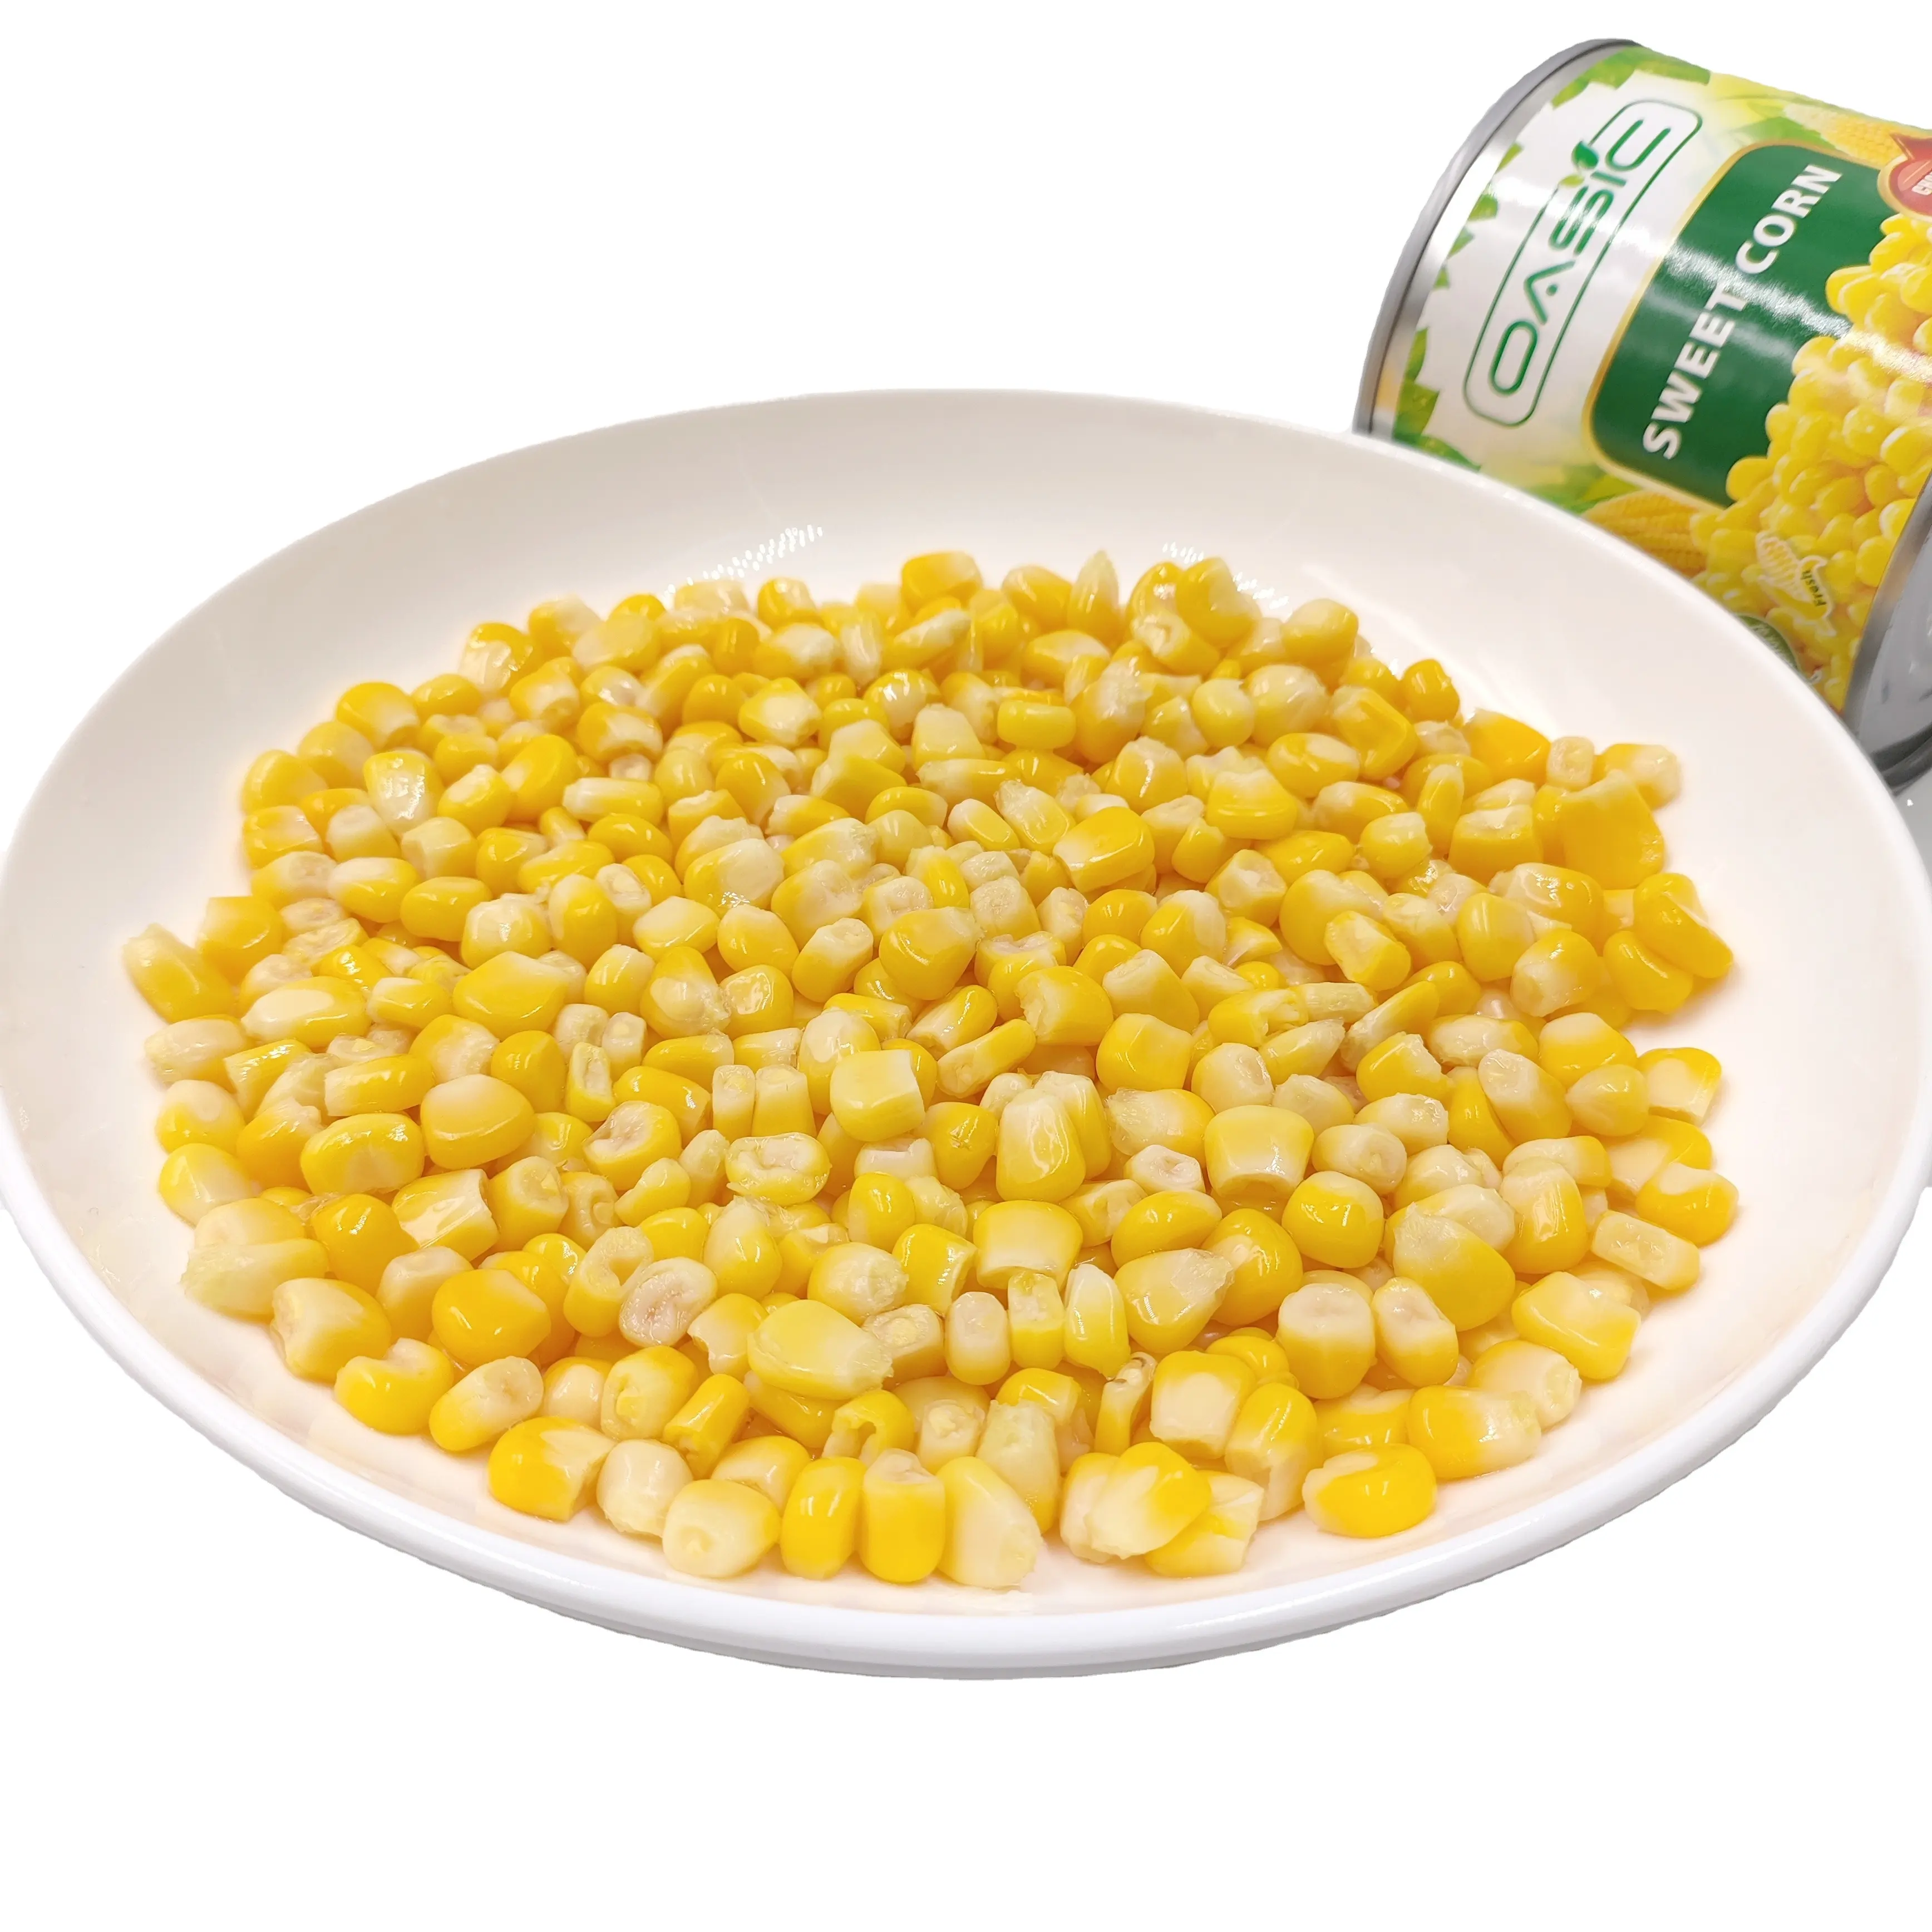 Tanaman baru penjualan terbaik jagung manis kaleng dengan nutrisi tersedia dengan harga grosir dari Cina